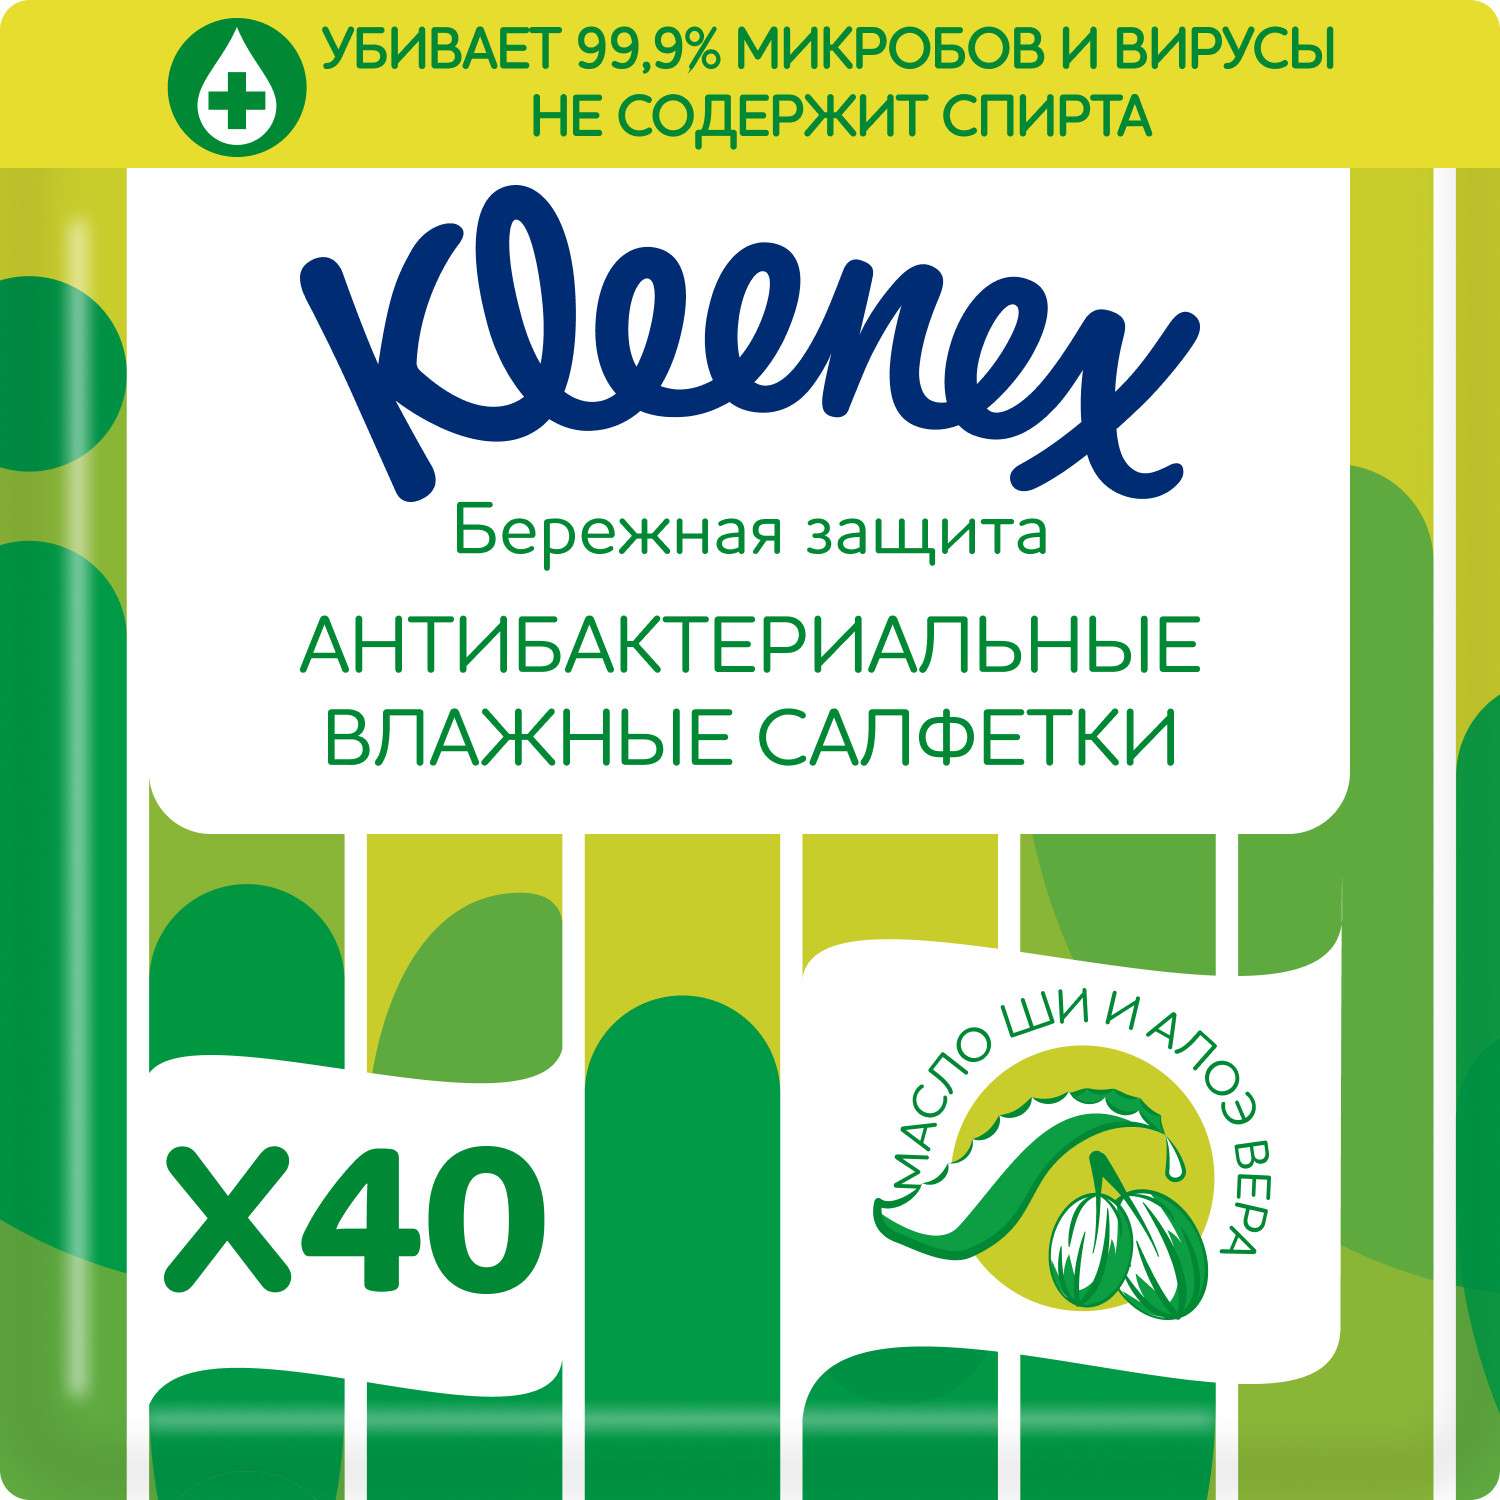 Салфетки Kleenex антибактериальные 40шт - фото 1